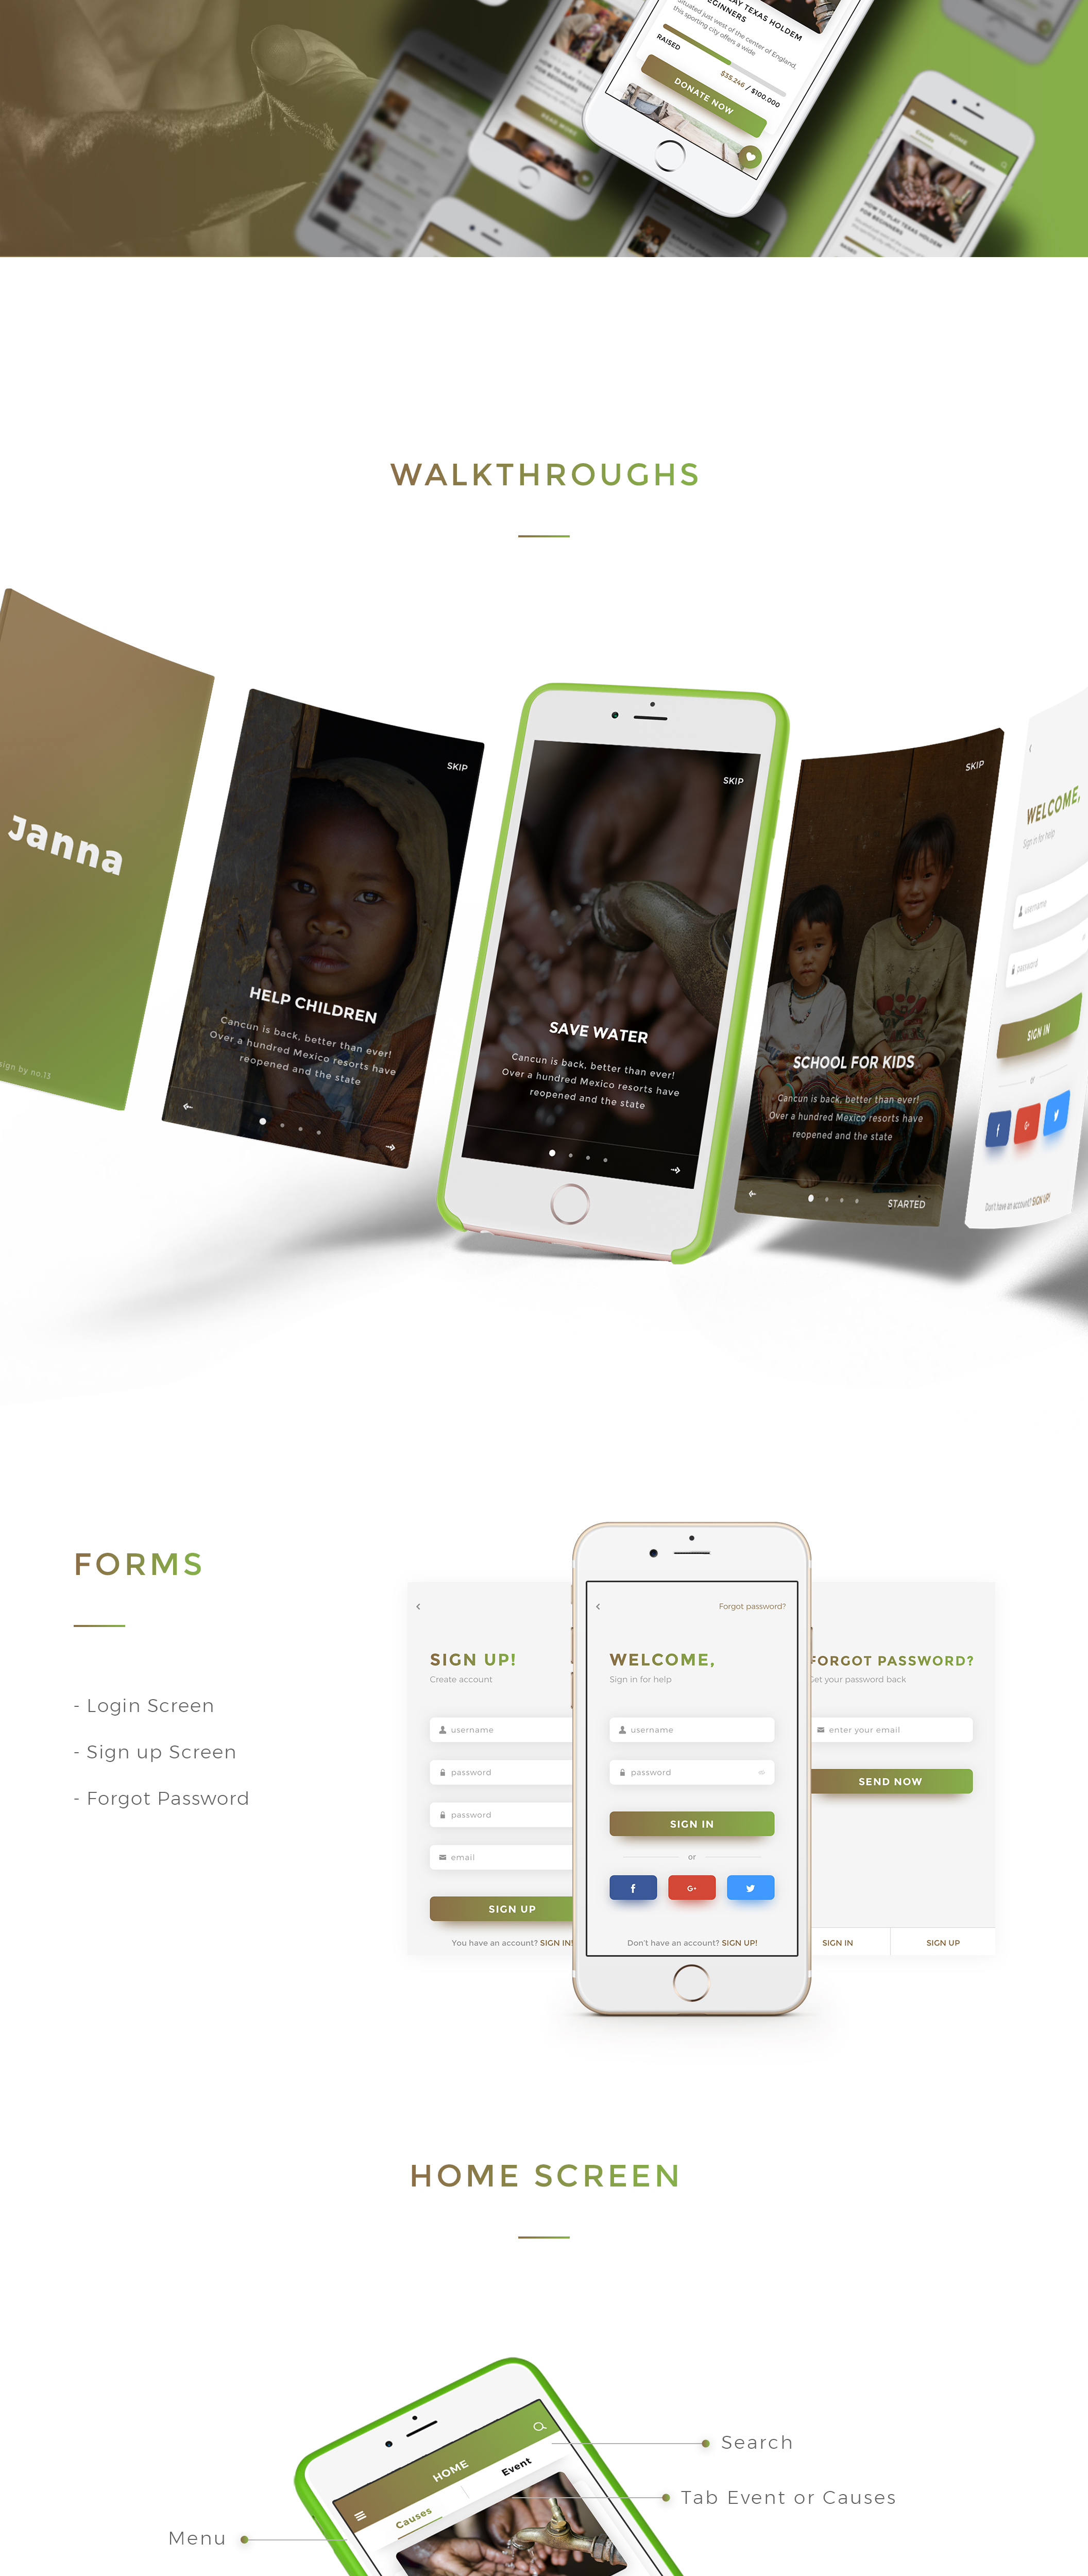 慈善公益活动手机APP UI工具包 Janna Charity Mobile UI Kit插图1